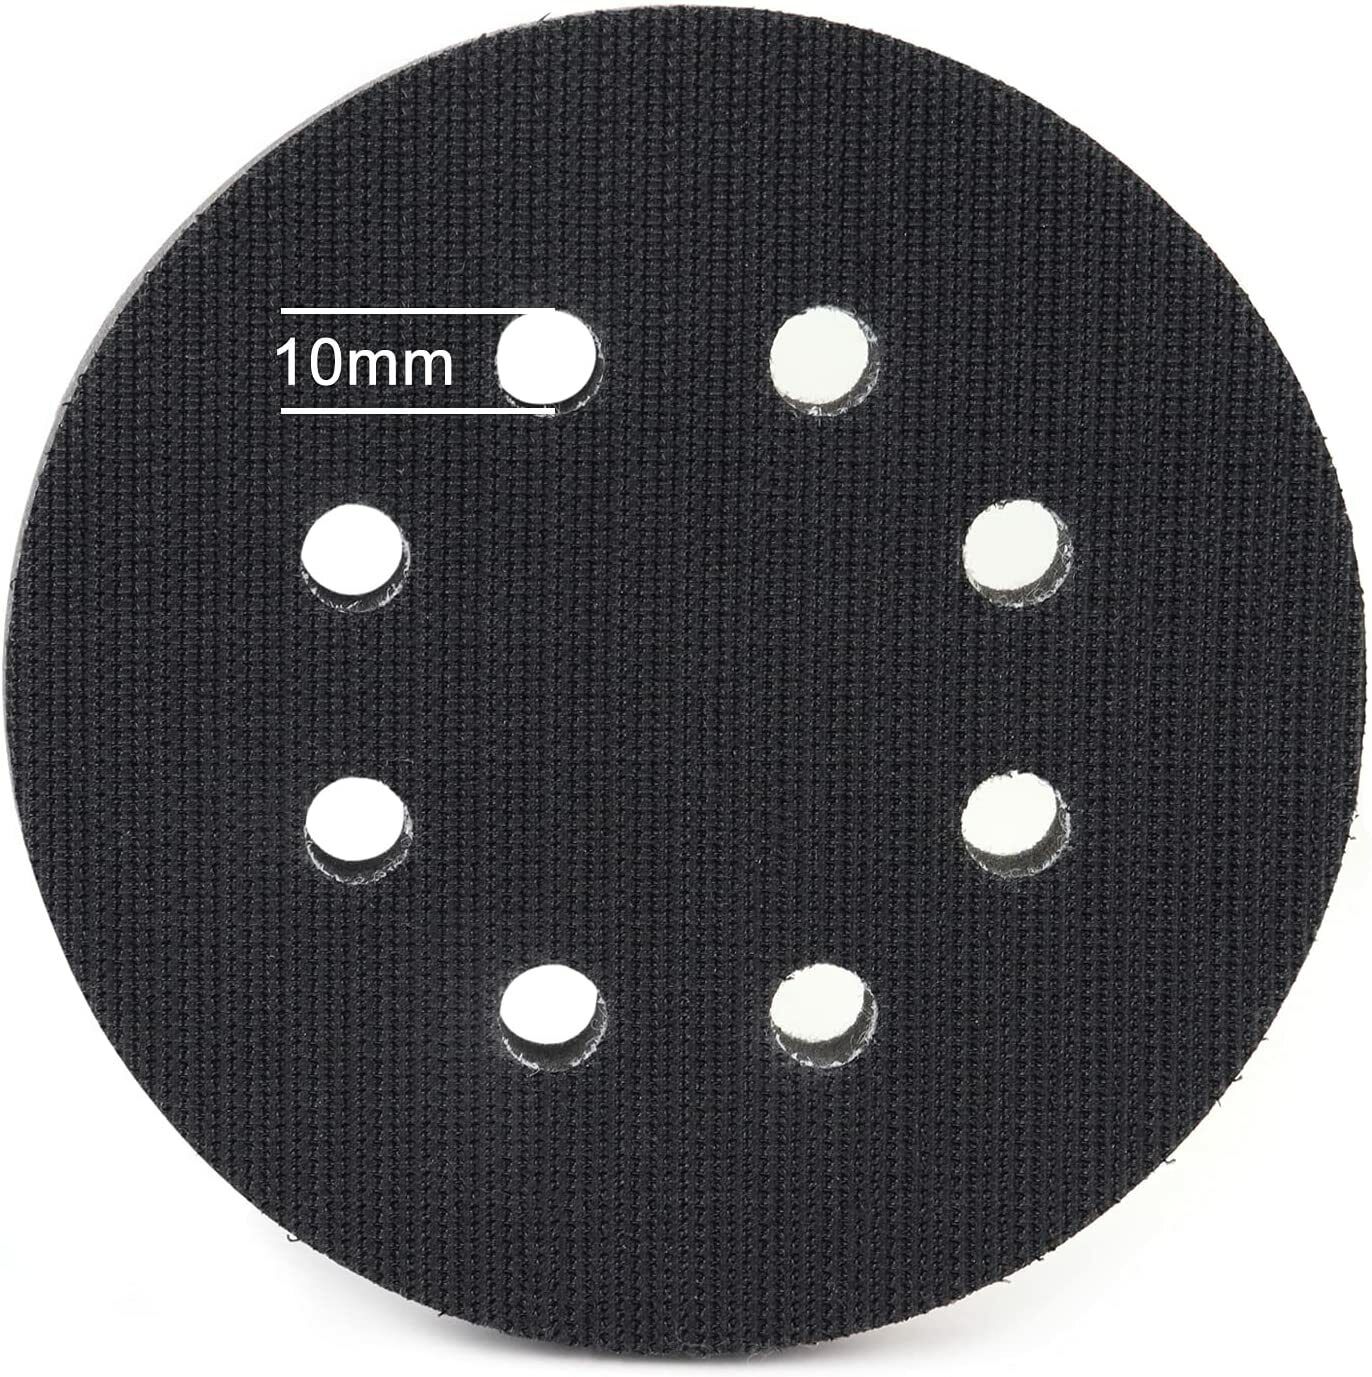 5 inch 8-Hole Hook Loop Wet Dry Sanding Disc Orbital Sander Paper Sandpaper Pads